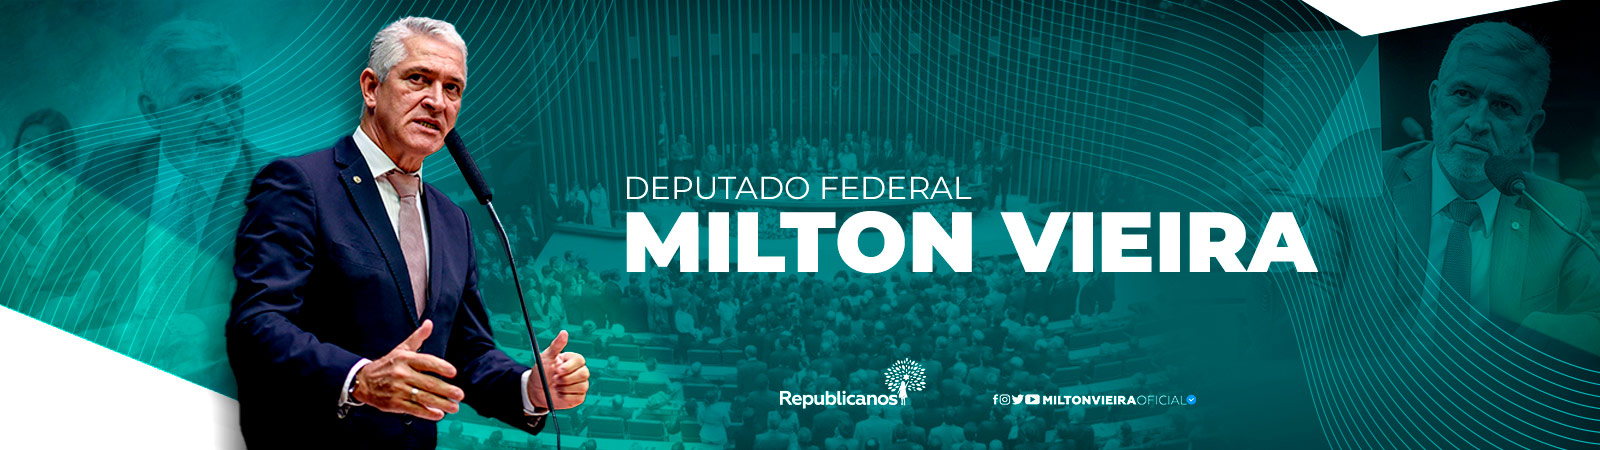 Projeto de Milton Vieira beneficia micro empresas de eventos privados durante pandemia